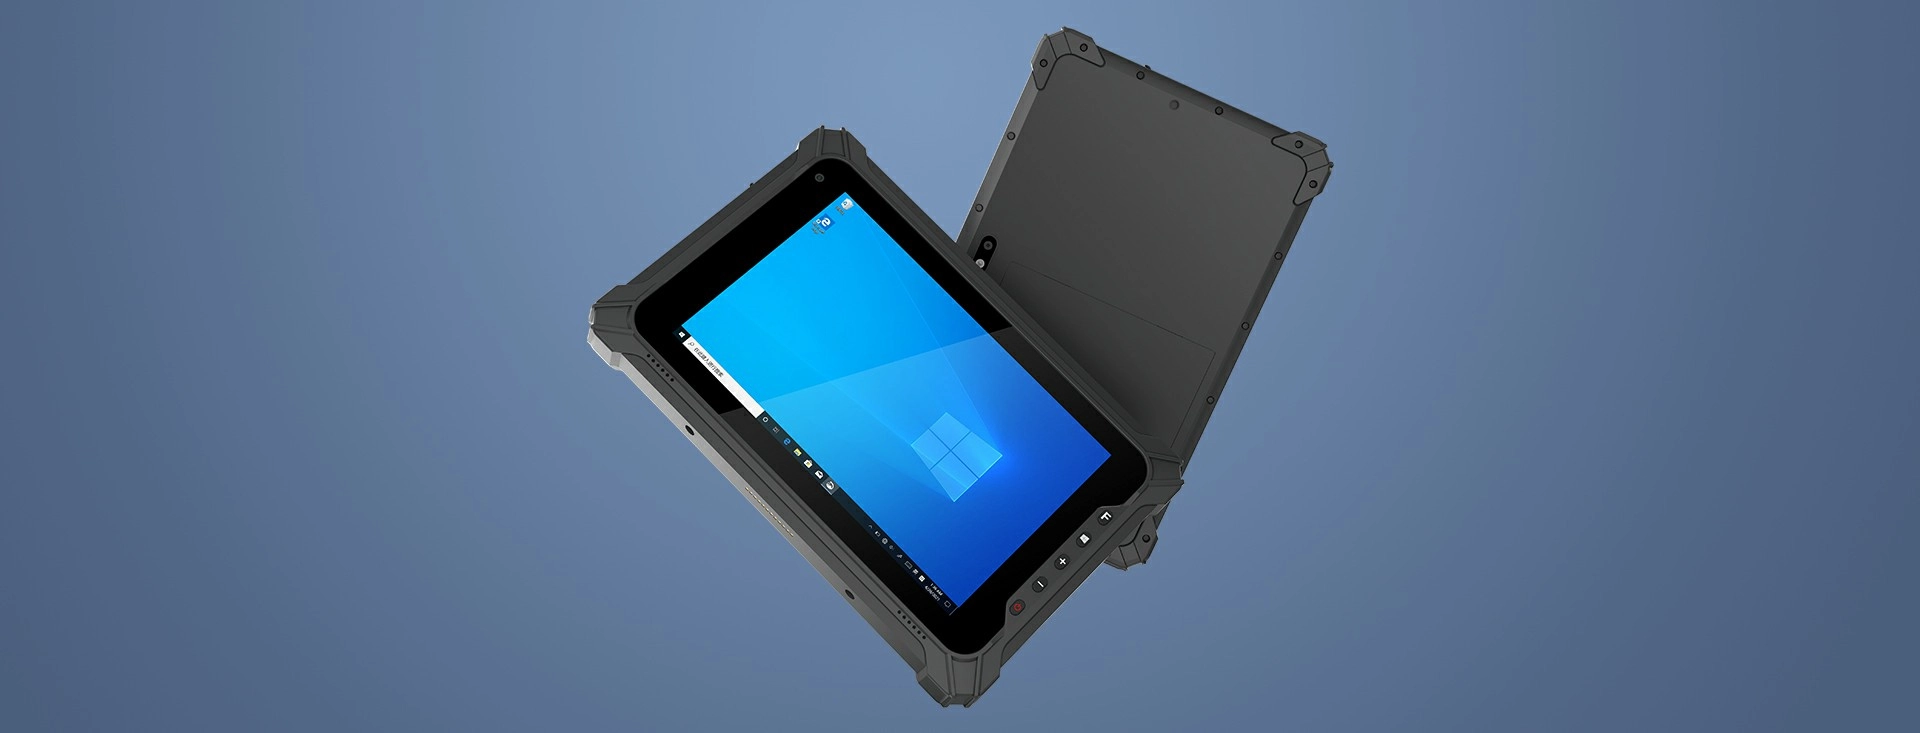 Tablette industrielle Windows 10 EM-I87J Emdoor